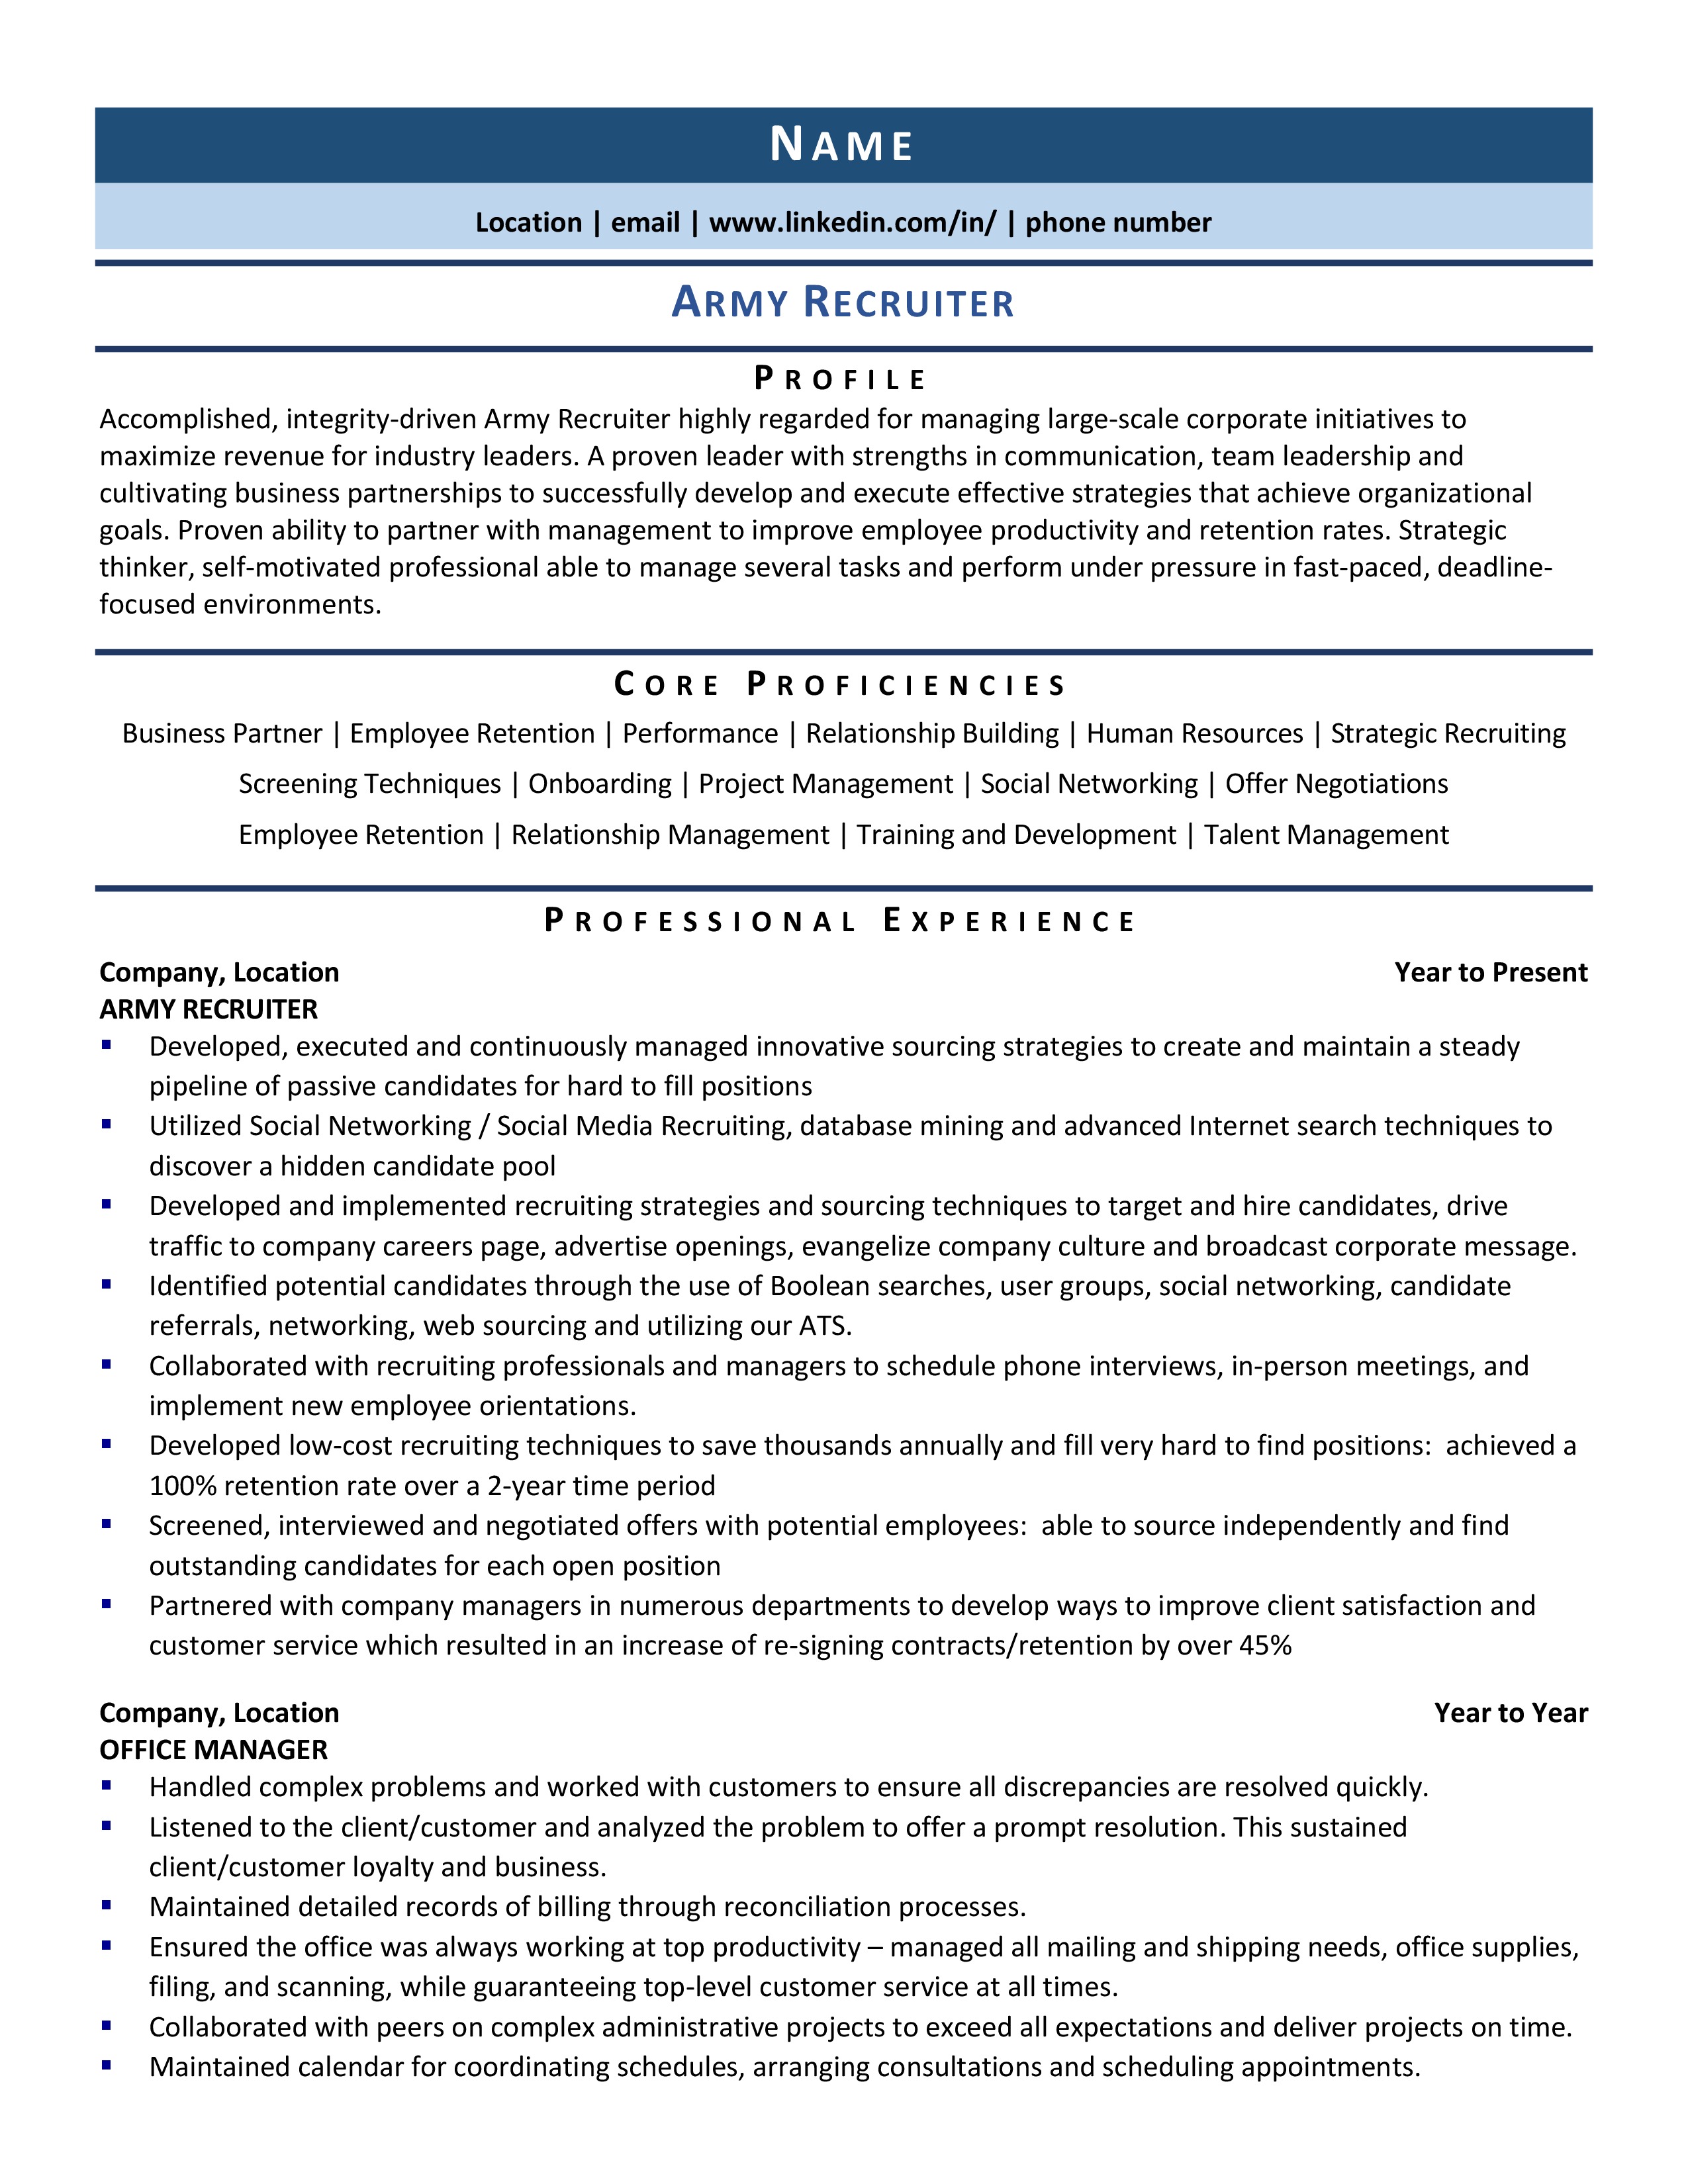 Resume Of Recruiter - Riset